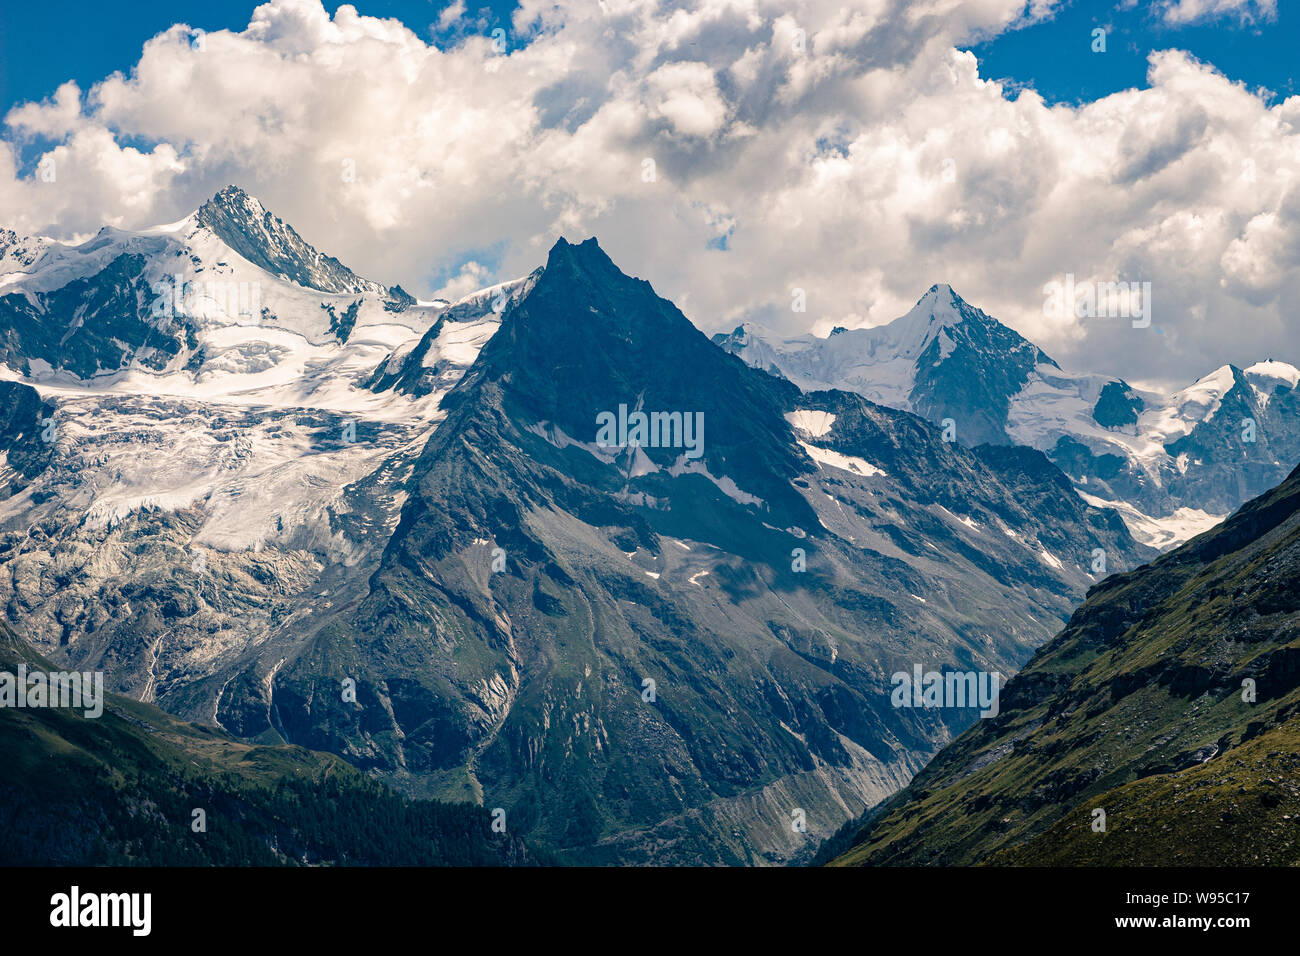 Vue spectaculaire sur les sommets enneigés des Alpes Pennines (Obergabelhorn, Besso, Zinalrothorn) vue depuis Sorebois dans l'été. Zinal, Val d' Annivie Banque D'Images